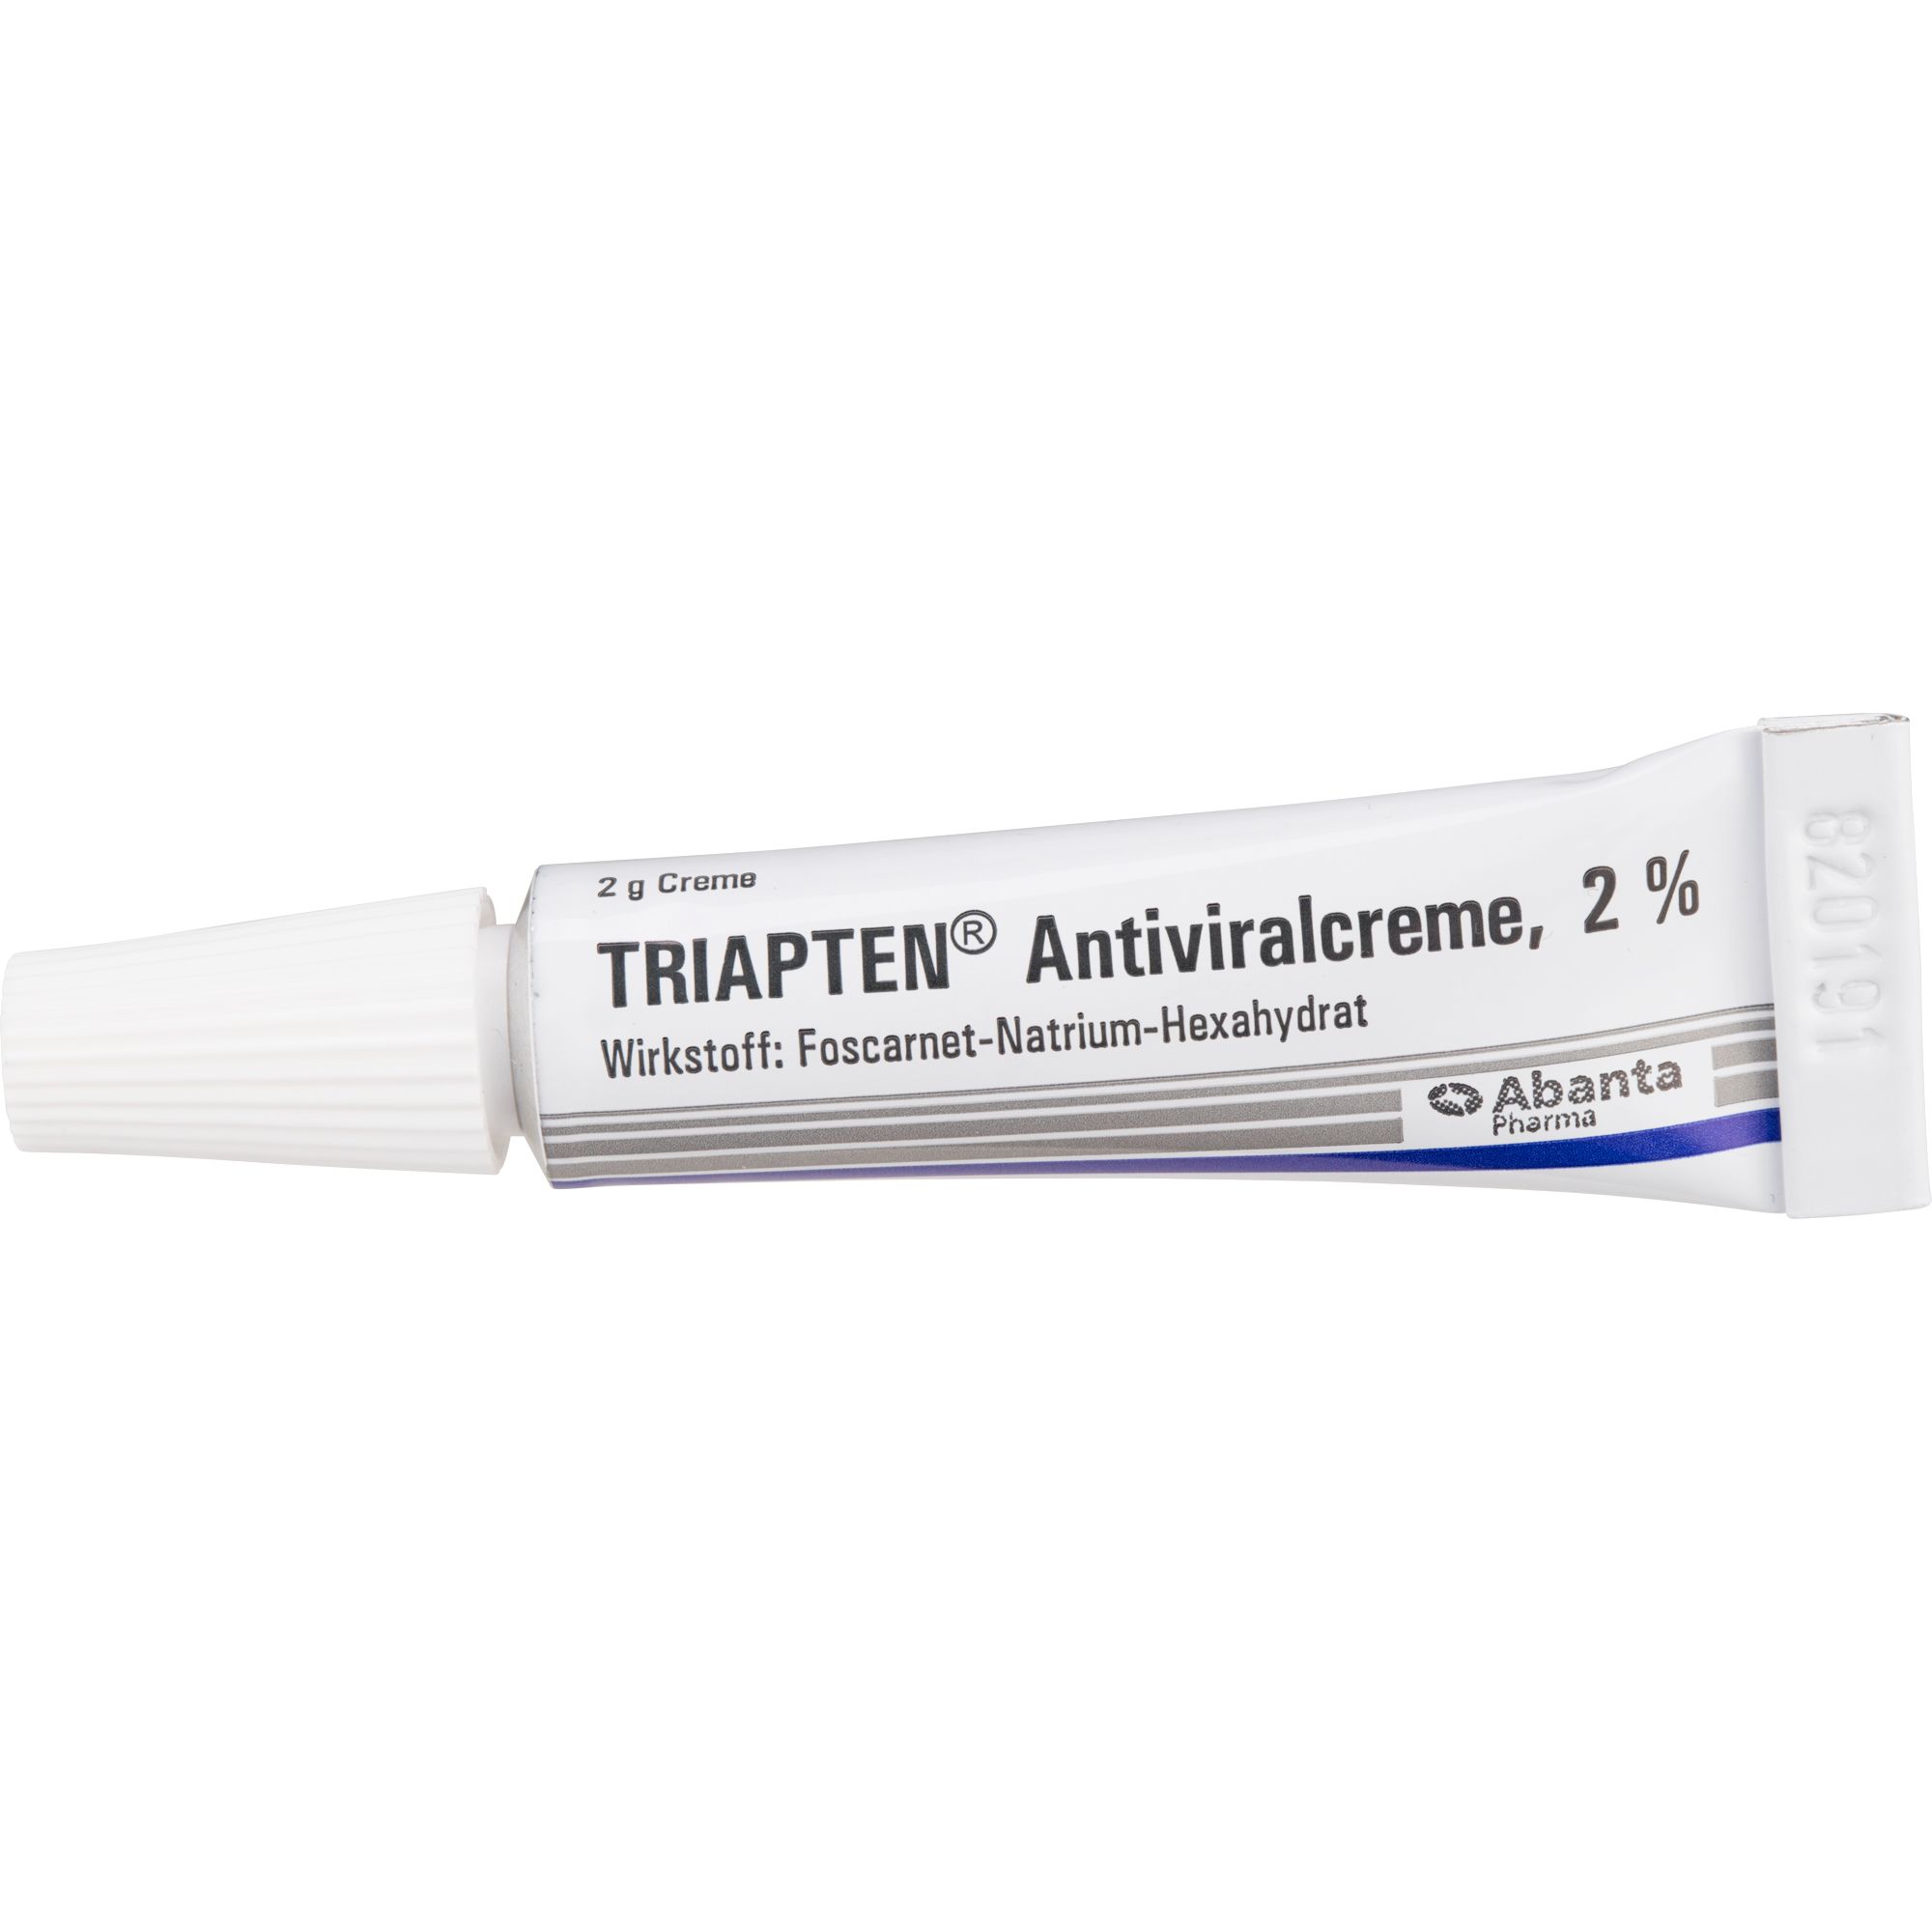 Triapten® Antiviralcreme 